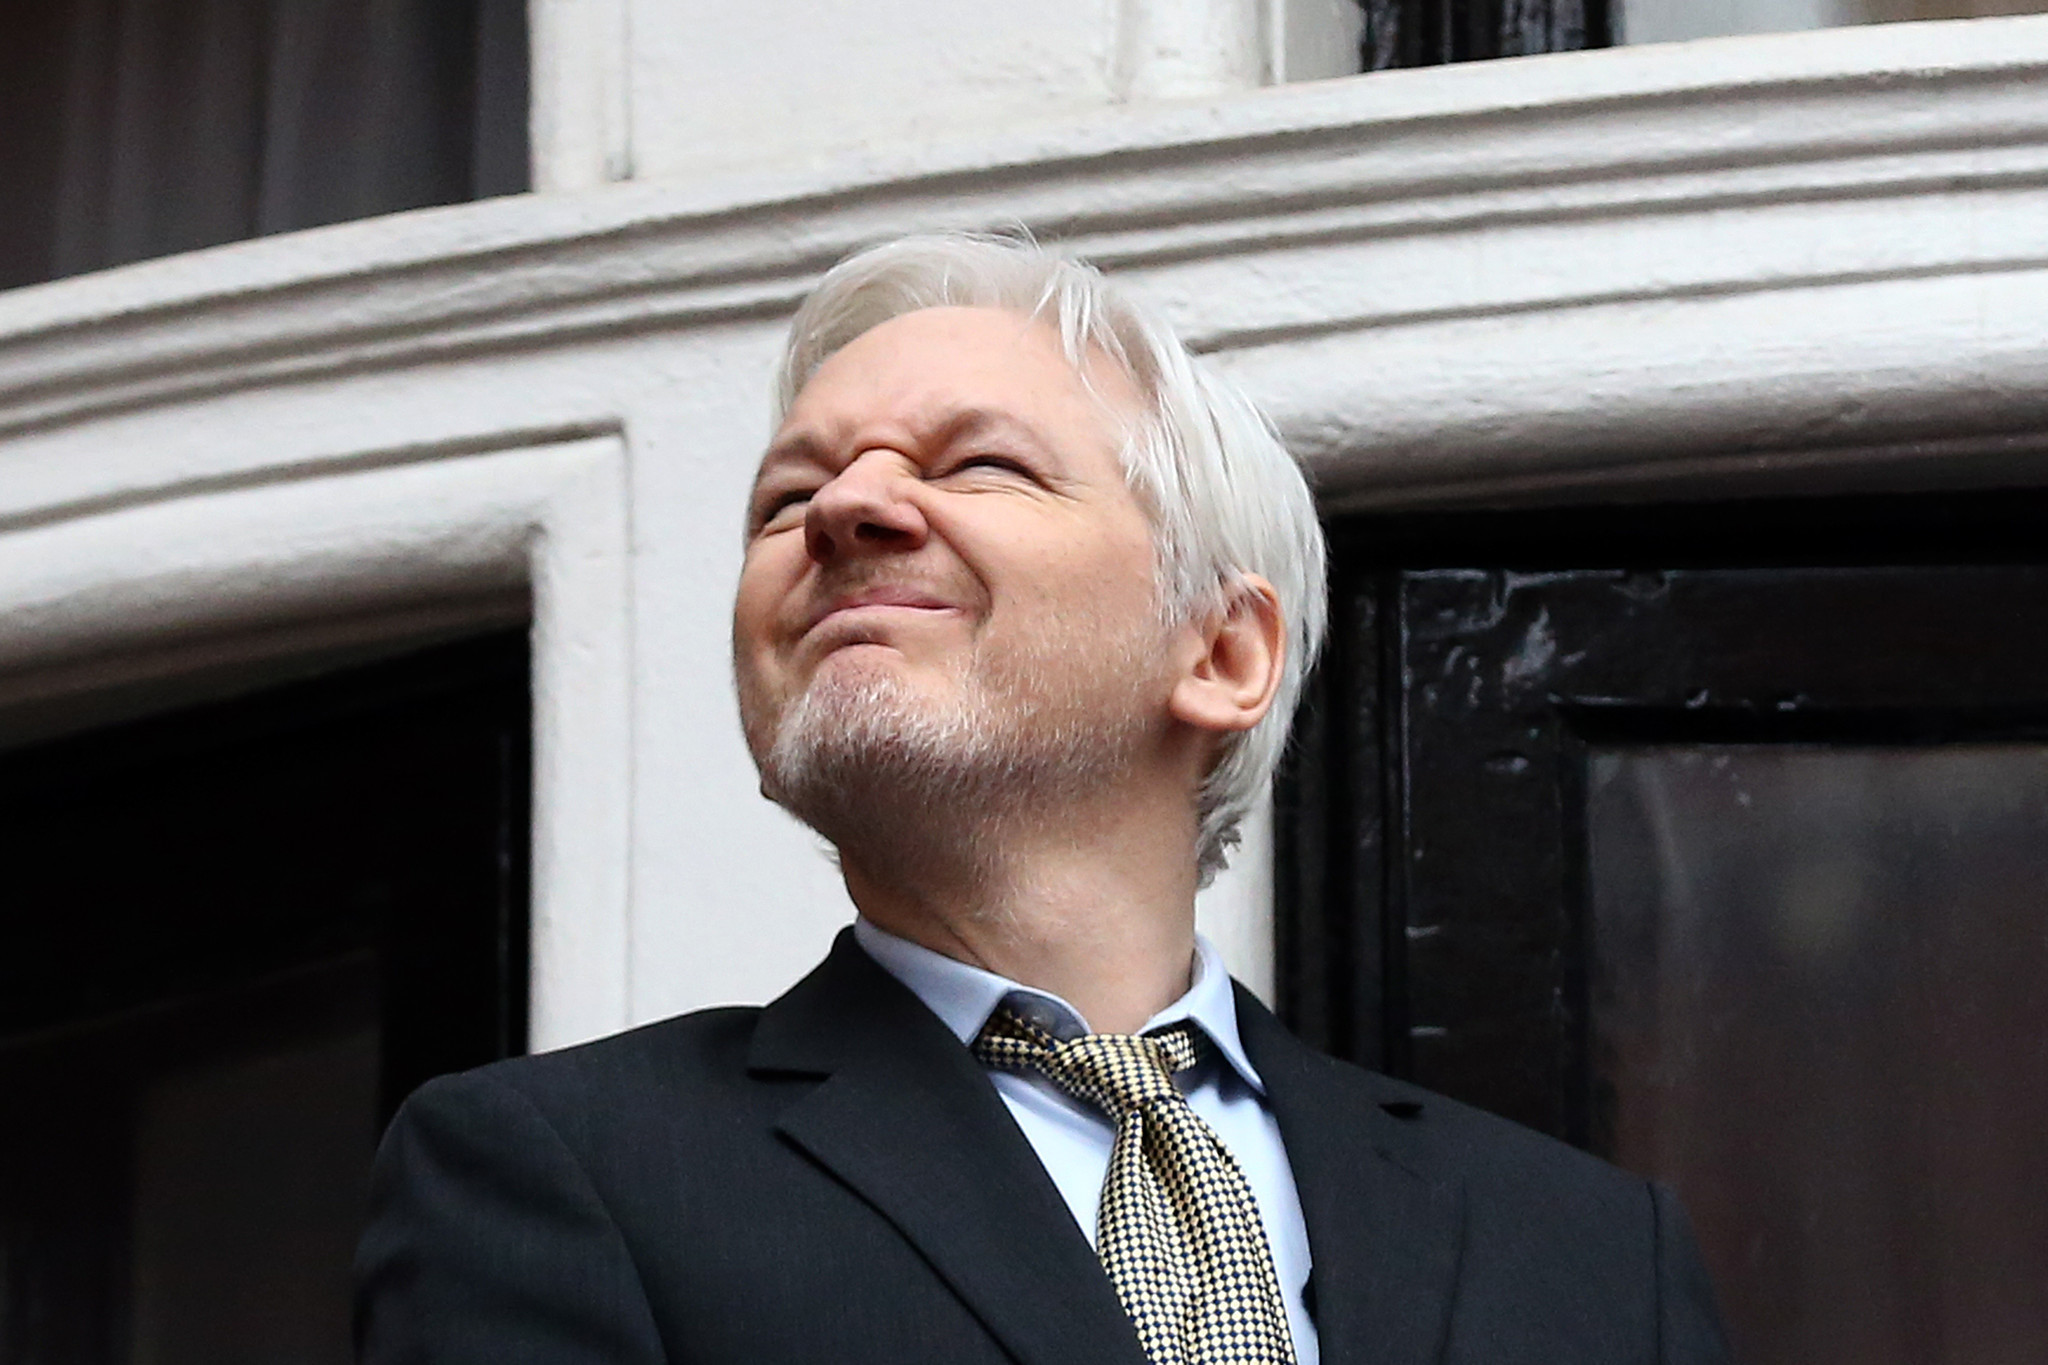 Julian Assange film 'Risk' offers an inside look at 